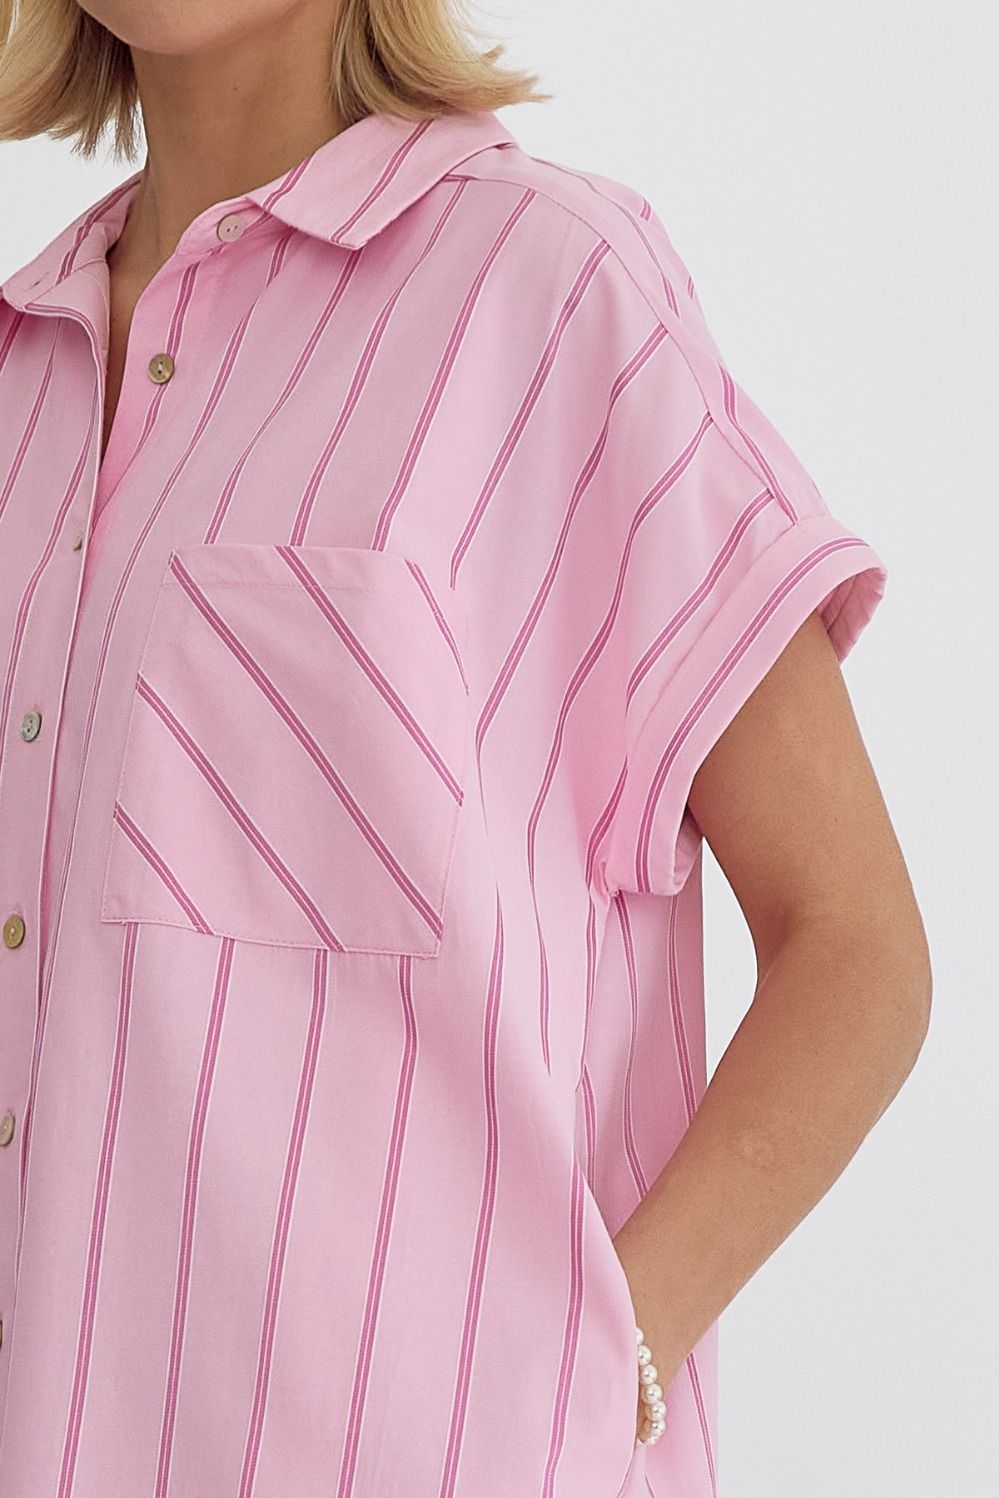 Pink Stripe Button Down Dress